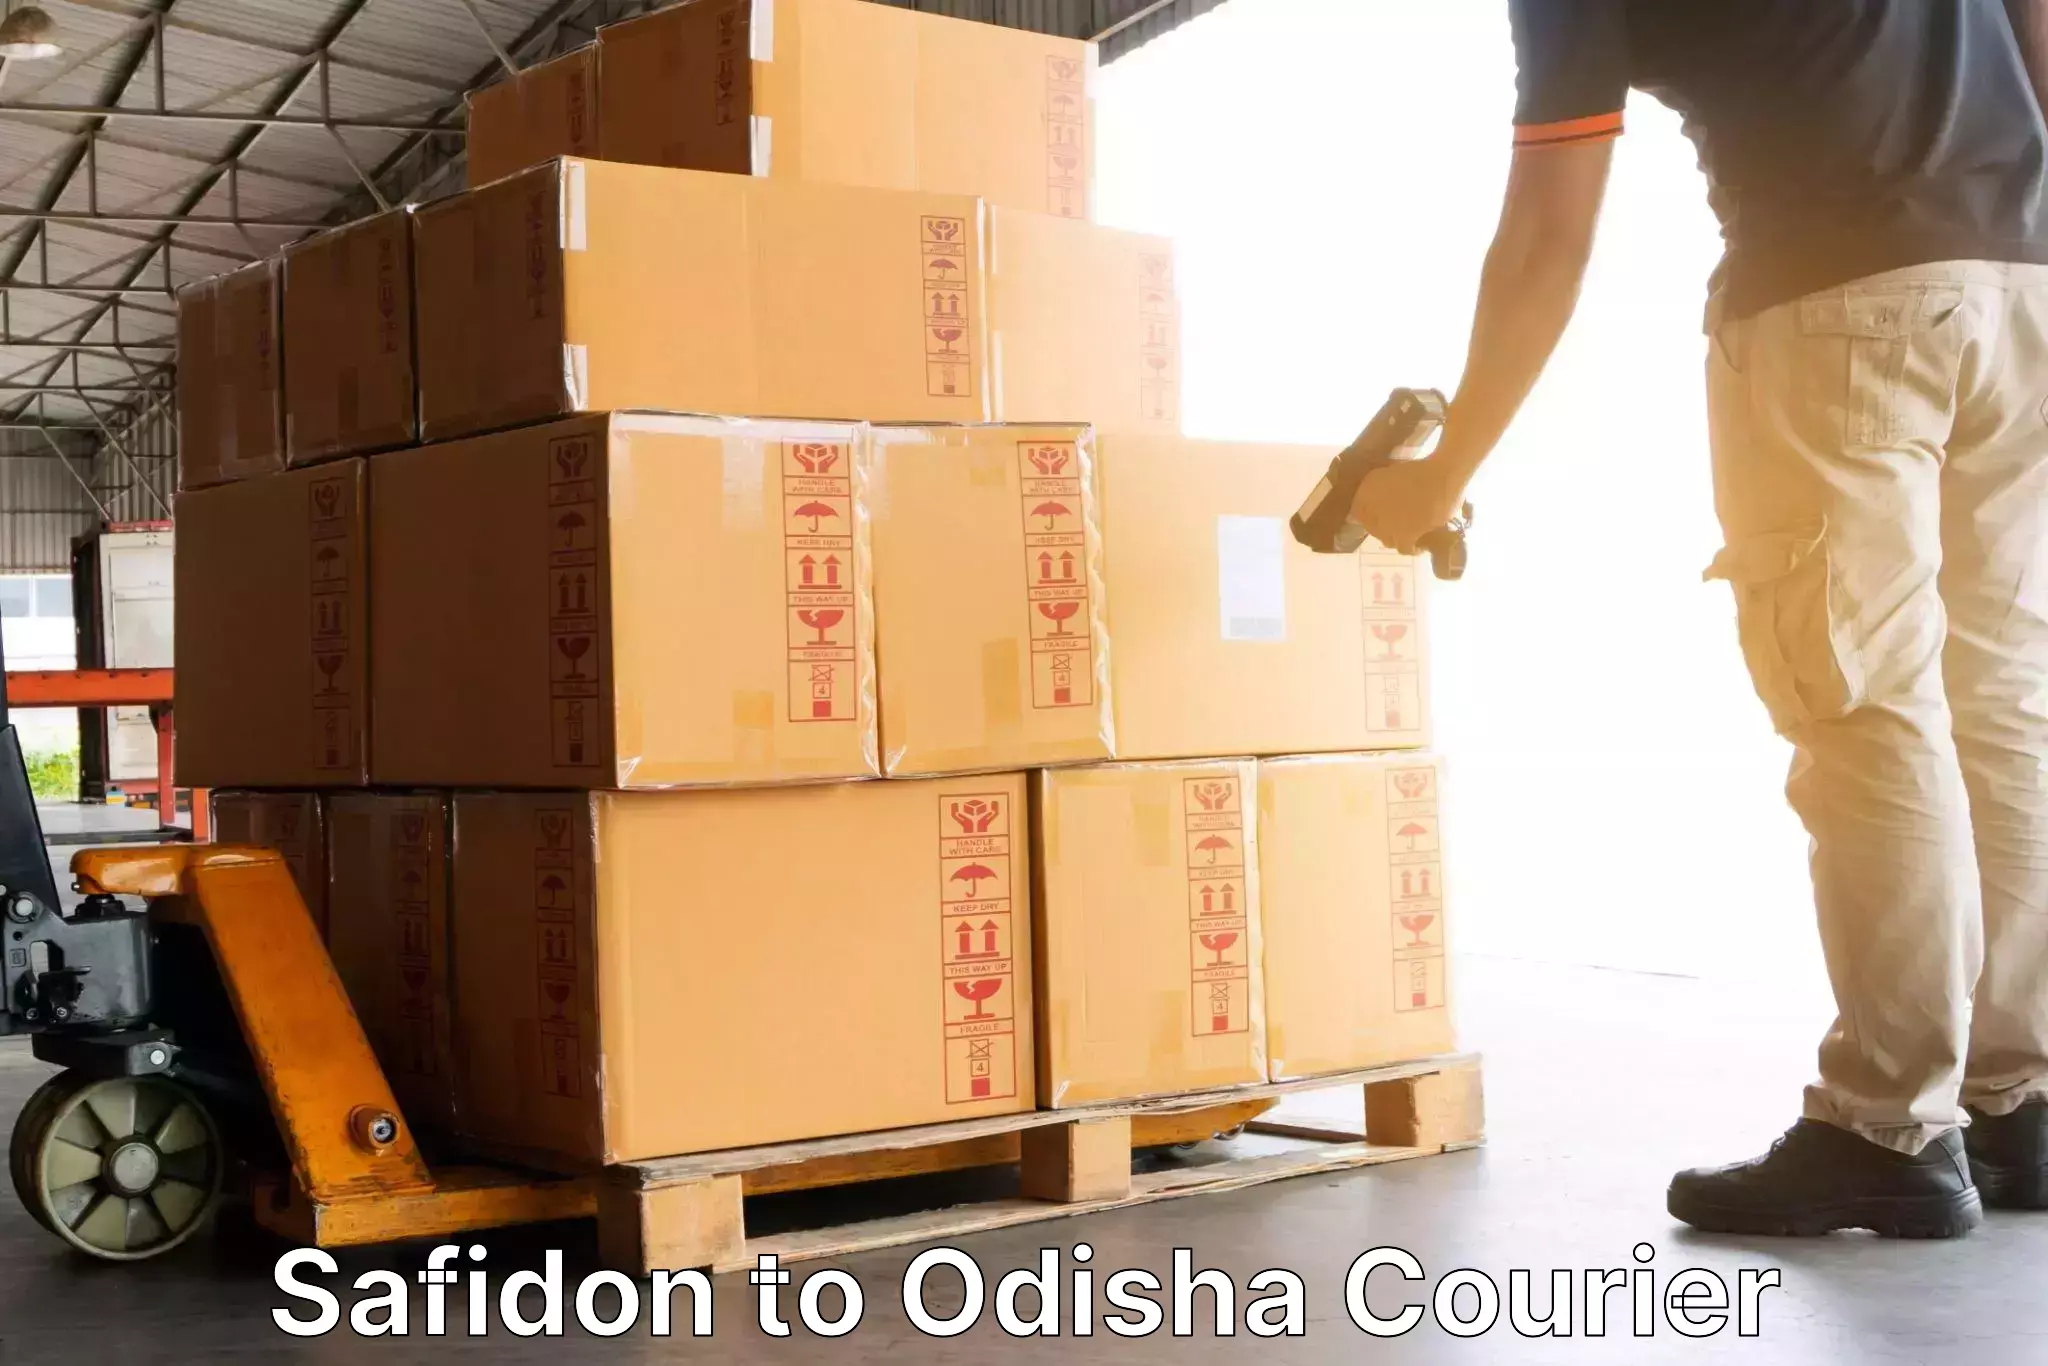 Global shipping solutions Safidon to Dhamara